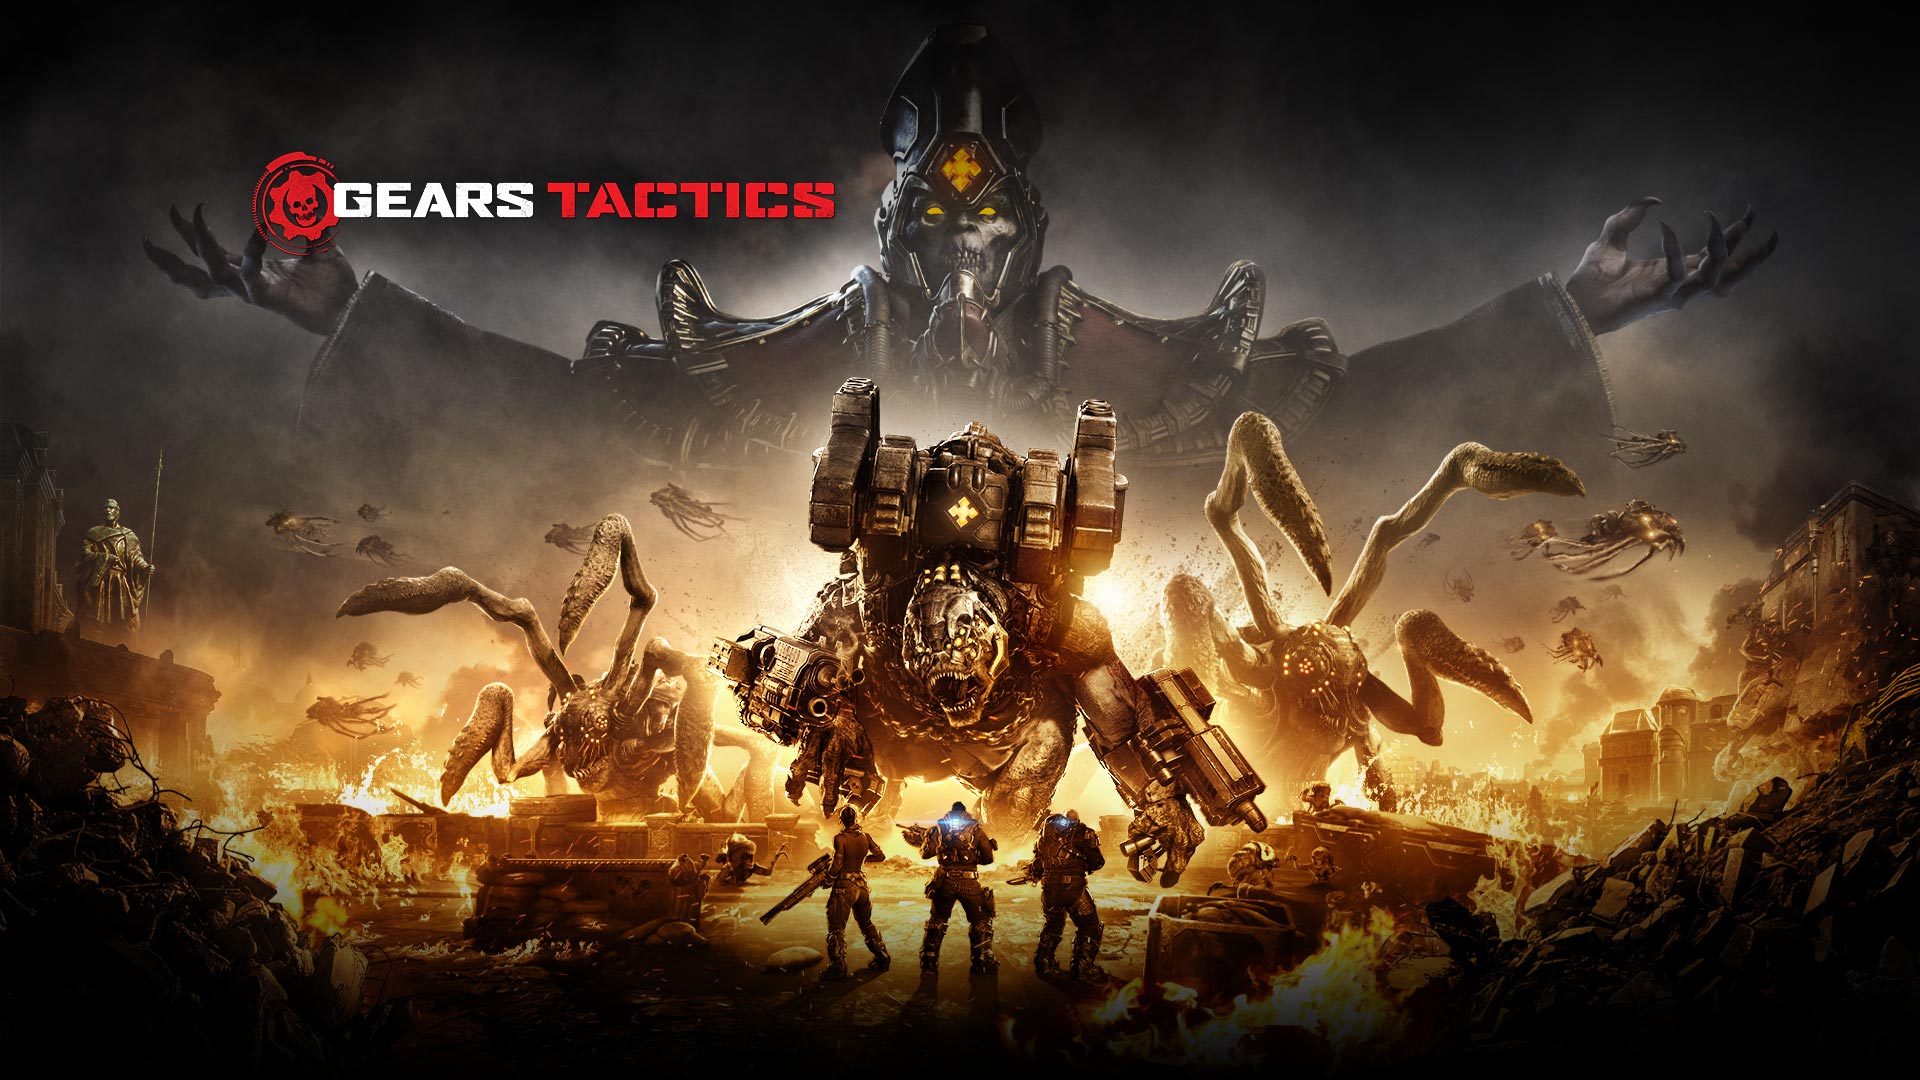 Gears Tactics-logo, scène van drie personages die op het punt staan om verschillende grote monsters te bestrijden, terwijl het gebied om hen heen in brand staat